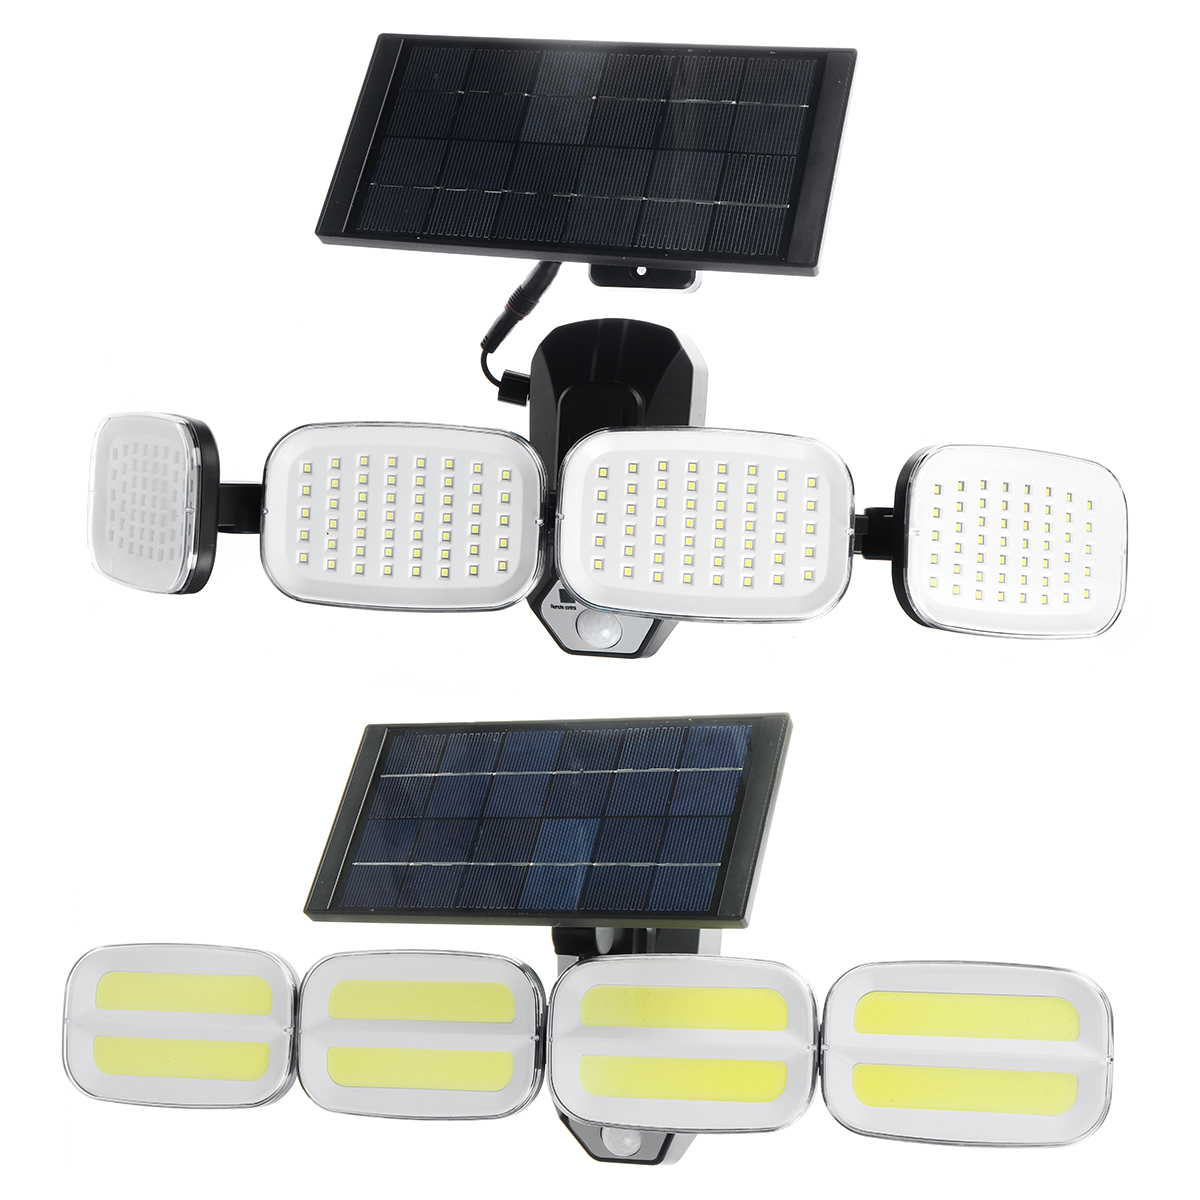 1200mAh-Solar-Wall-Light-Intelligent-Human-Sensor-Light-Super-Bright-Waterproof-Outdoor-Garden-Campi-1897765-11